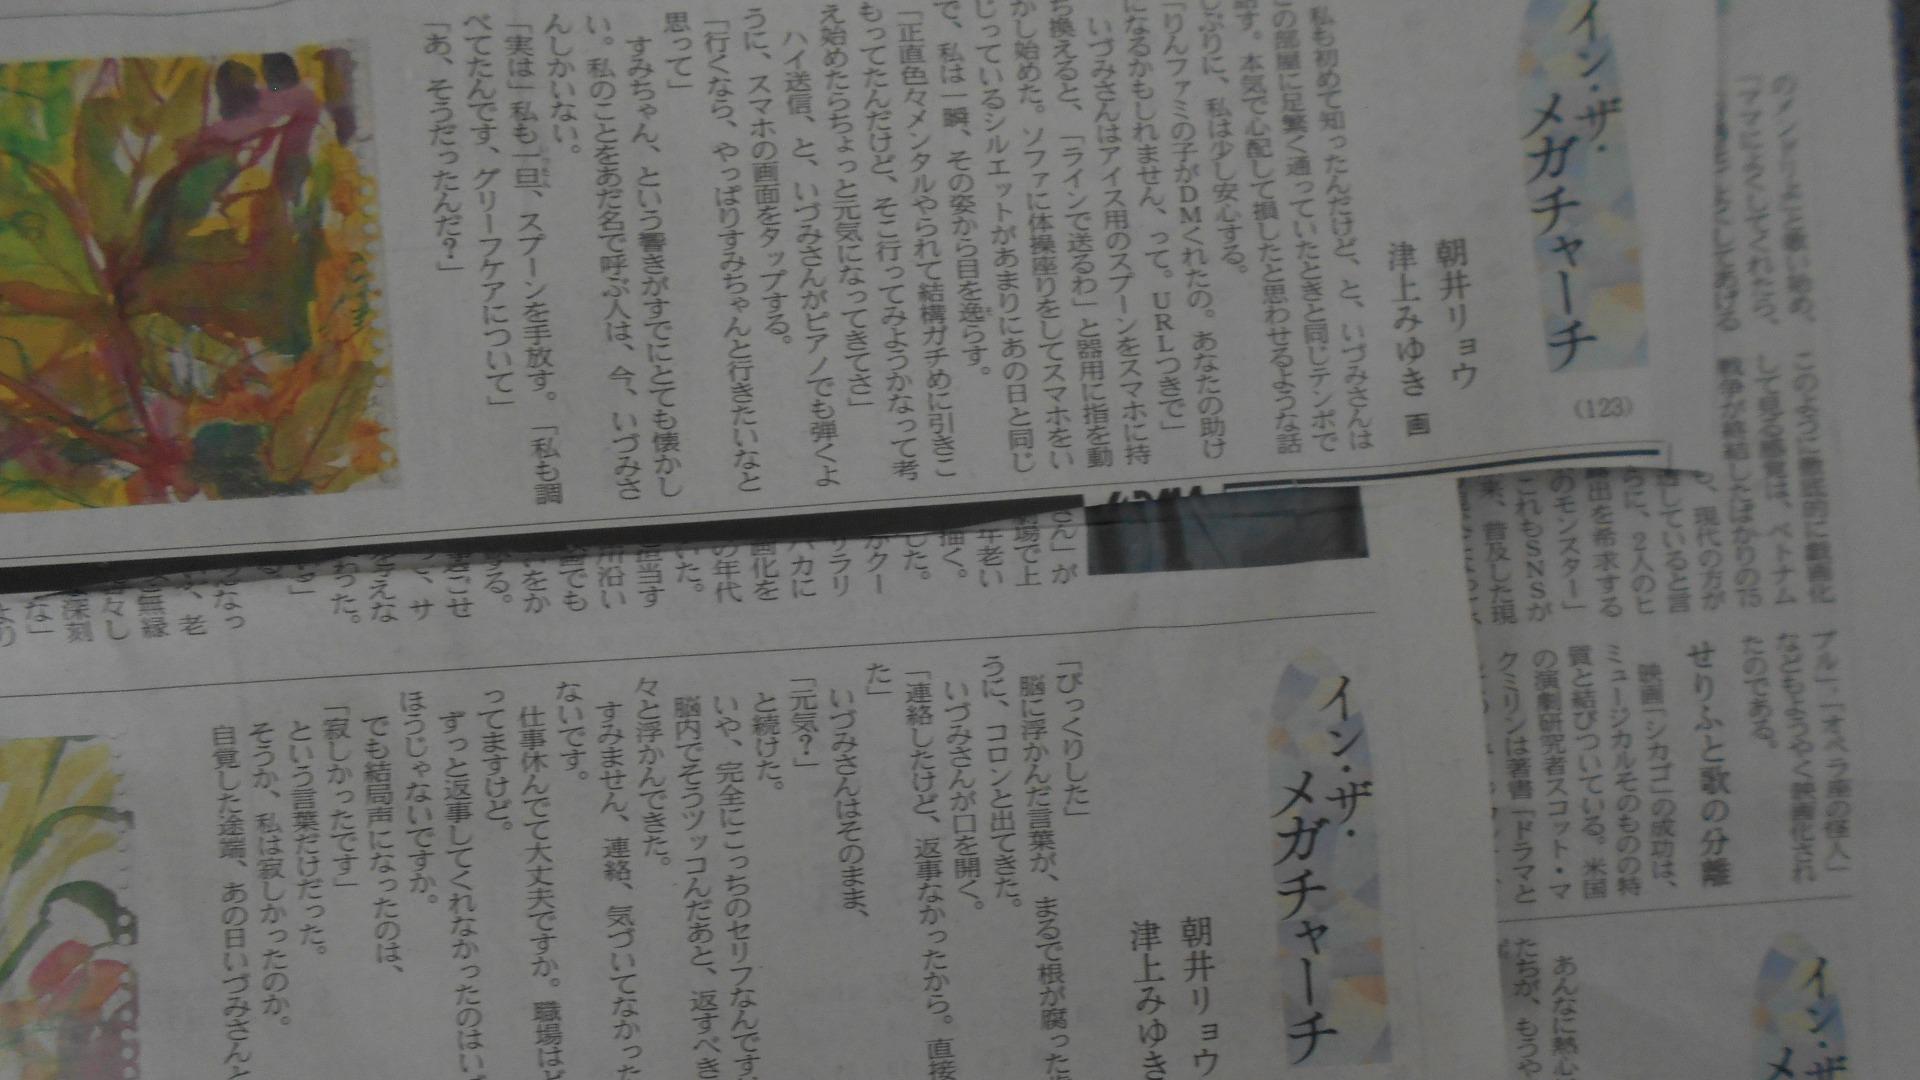 「三浦春馬さんの事件がモデルでは？」と言われて日本経済新聞の連載小説を読んでみたら驚いた（篠田博之） - エキスパート - Yahoo!ニュース